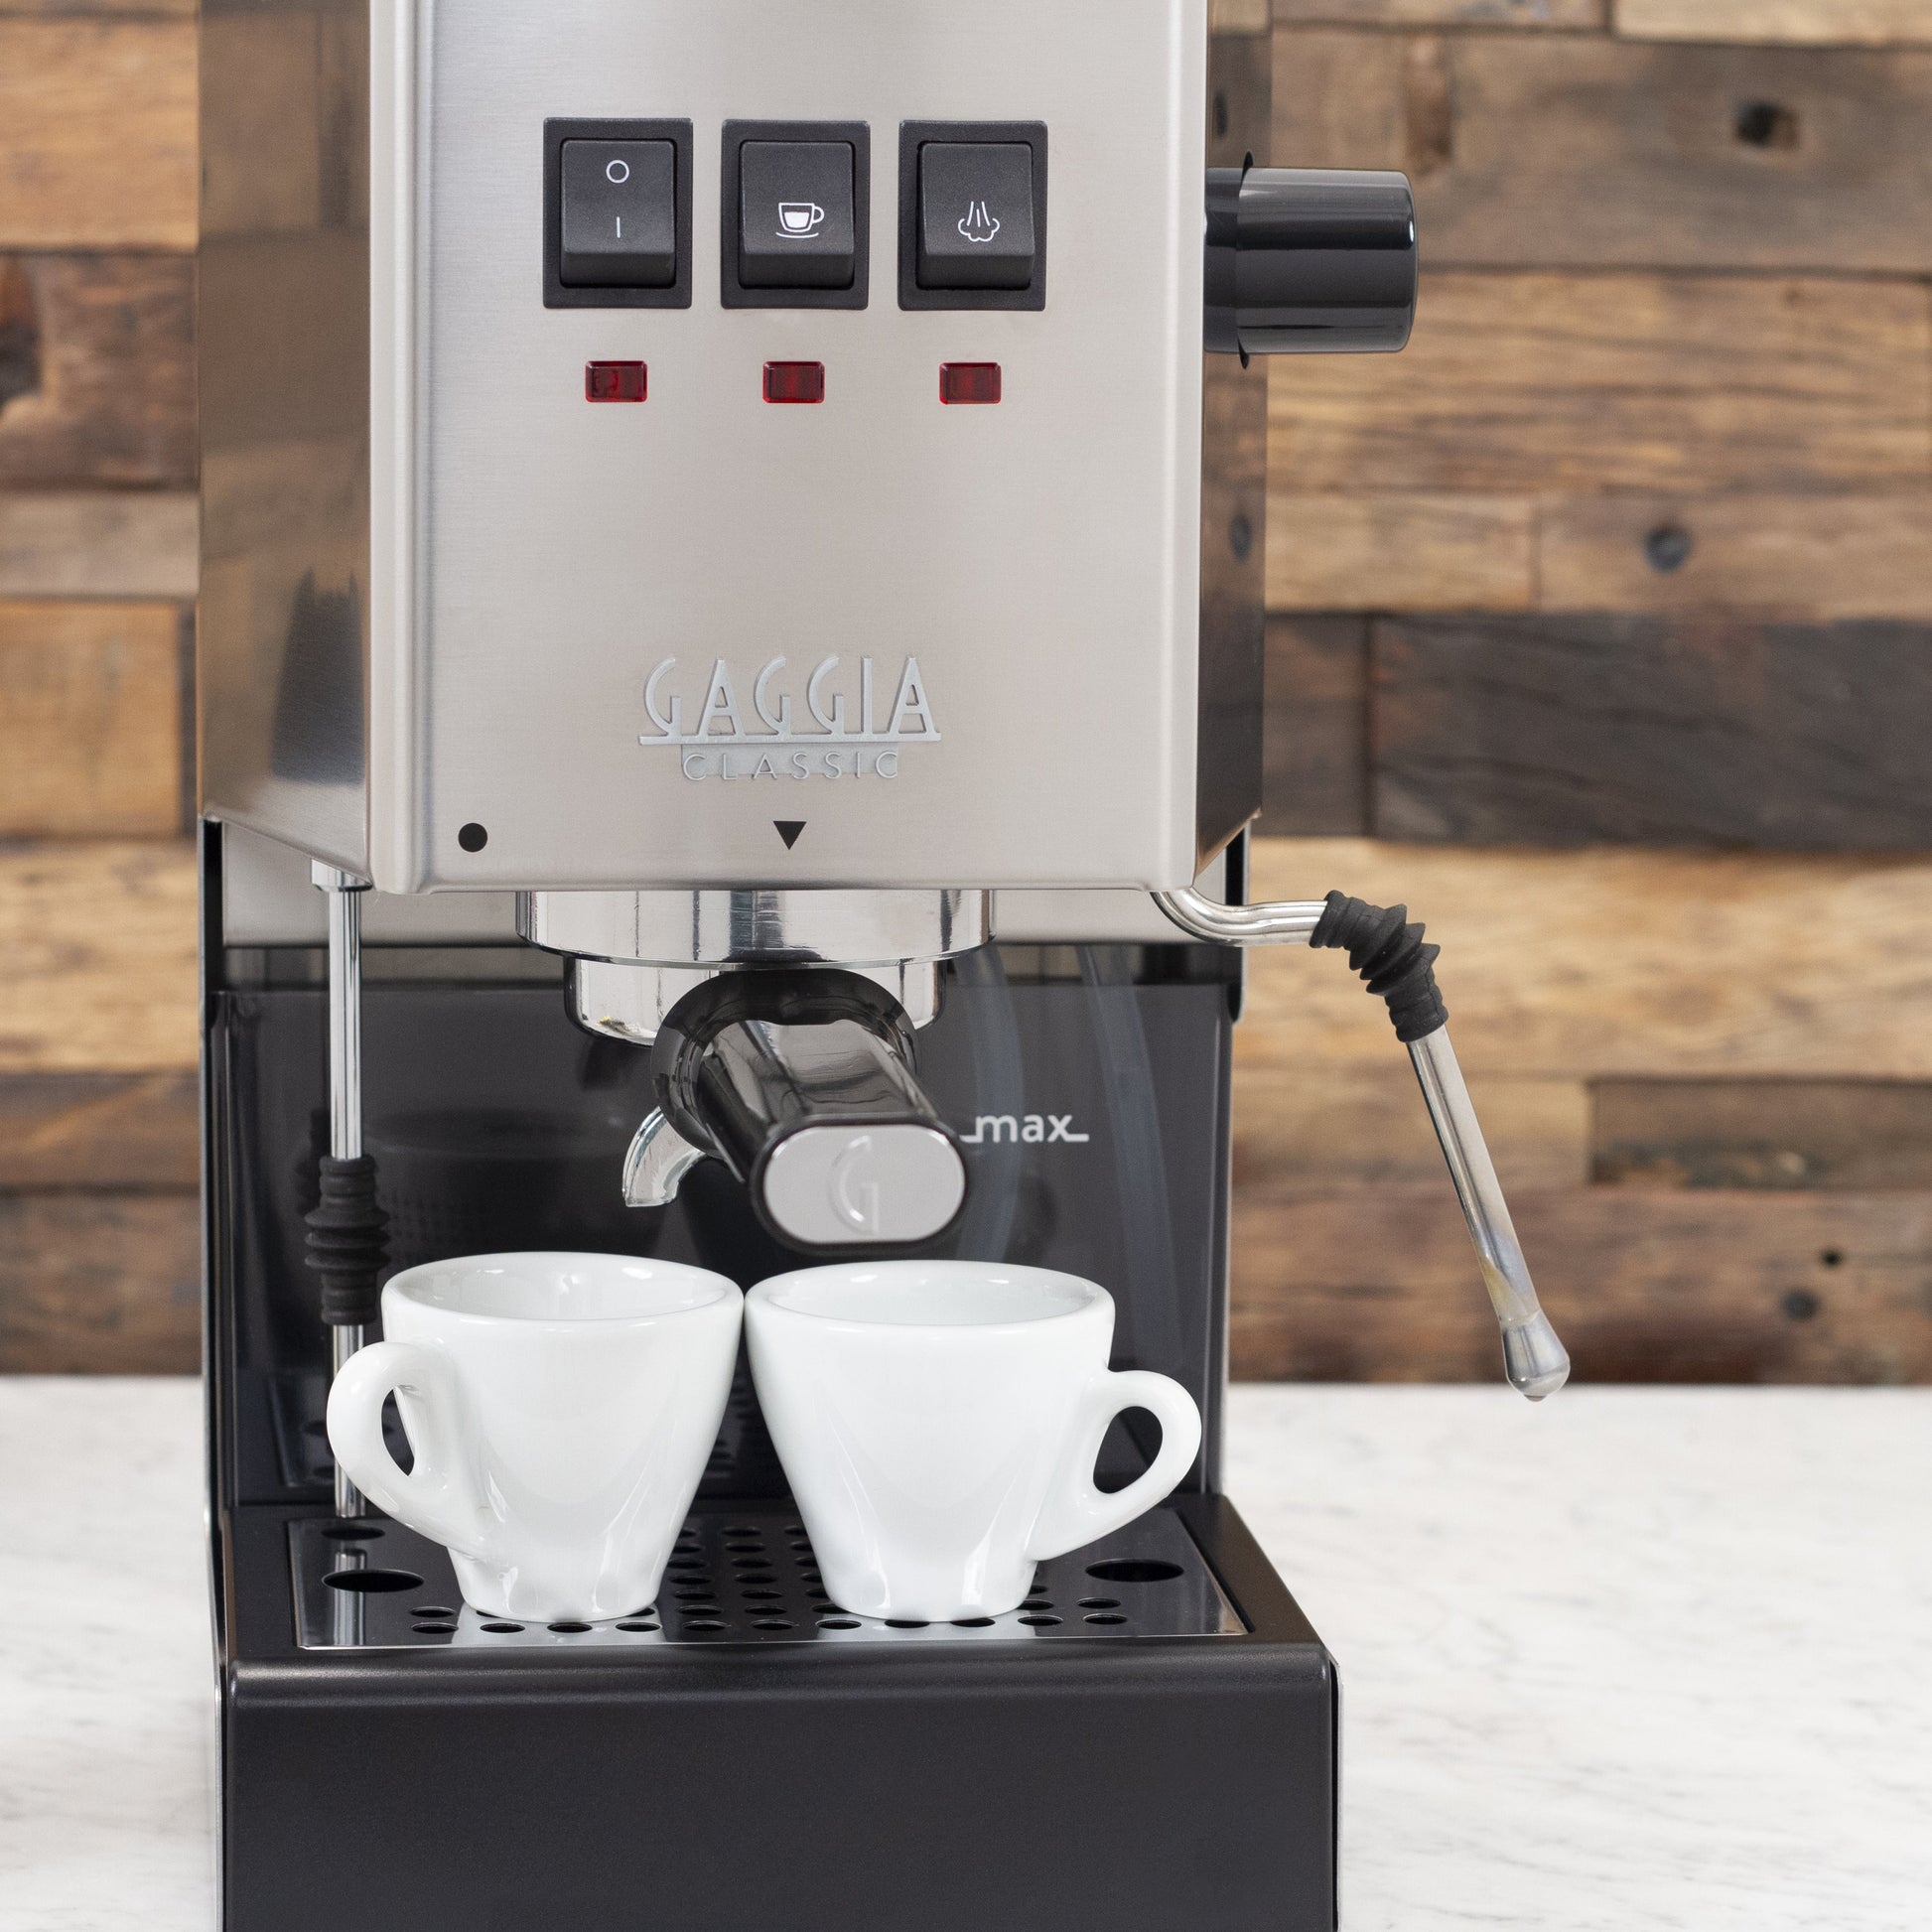 Gaggia Classic Semi-Automatic Espresso Machine